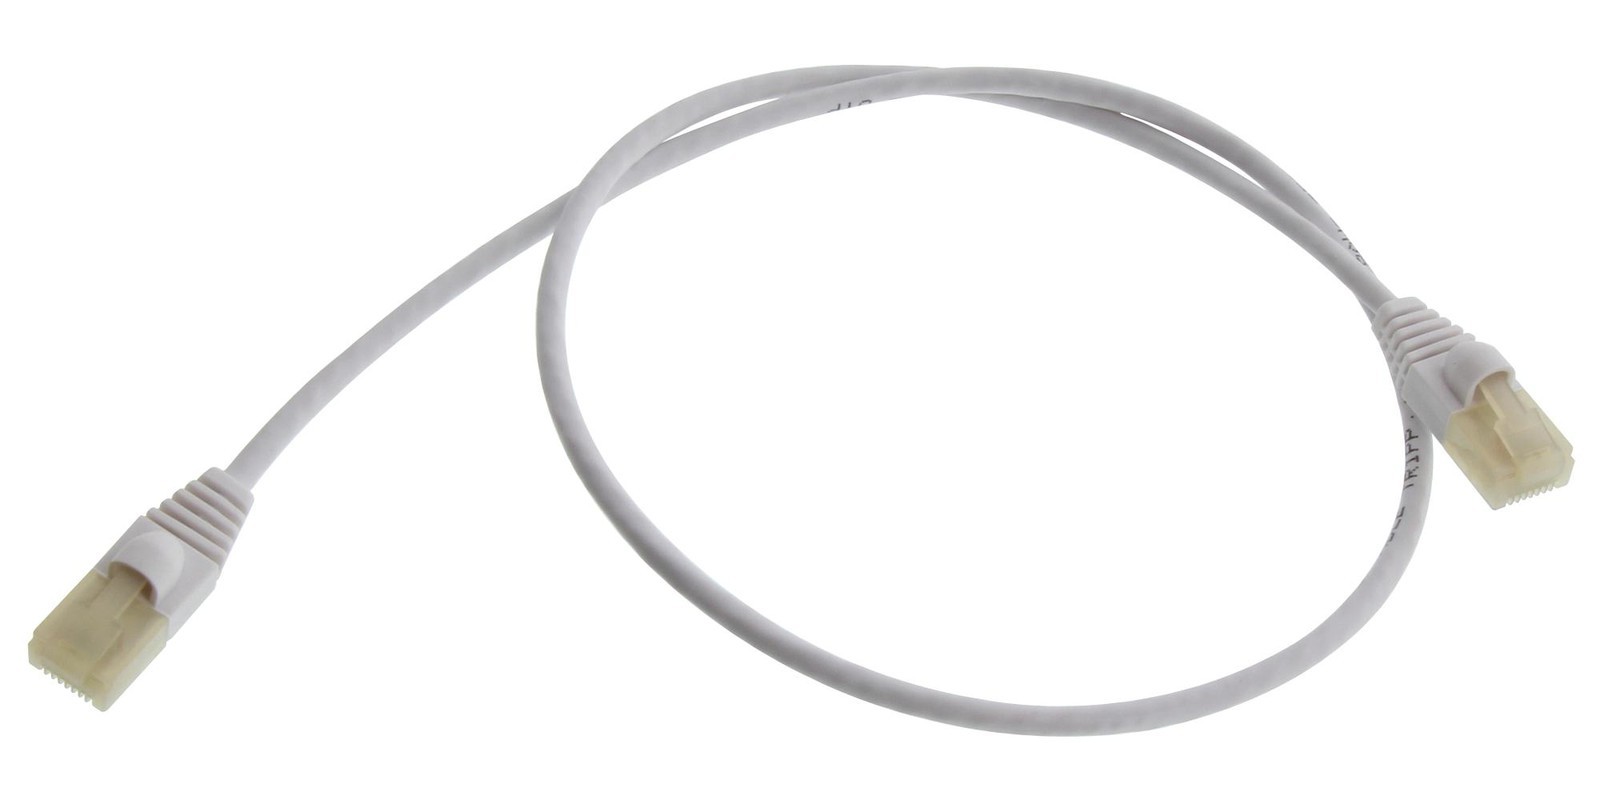 Eaton Tripp Lite N261Ab-S02-Wh Enet Cable, Rj45 Plug-Plug, 2Ft, White